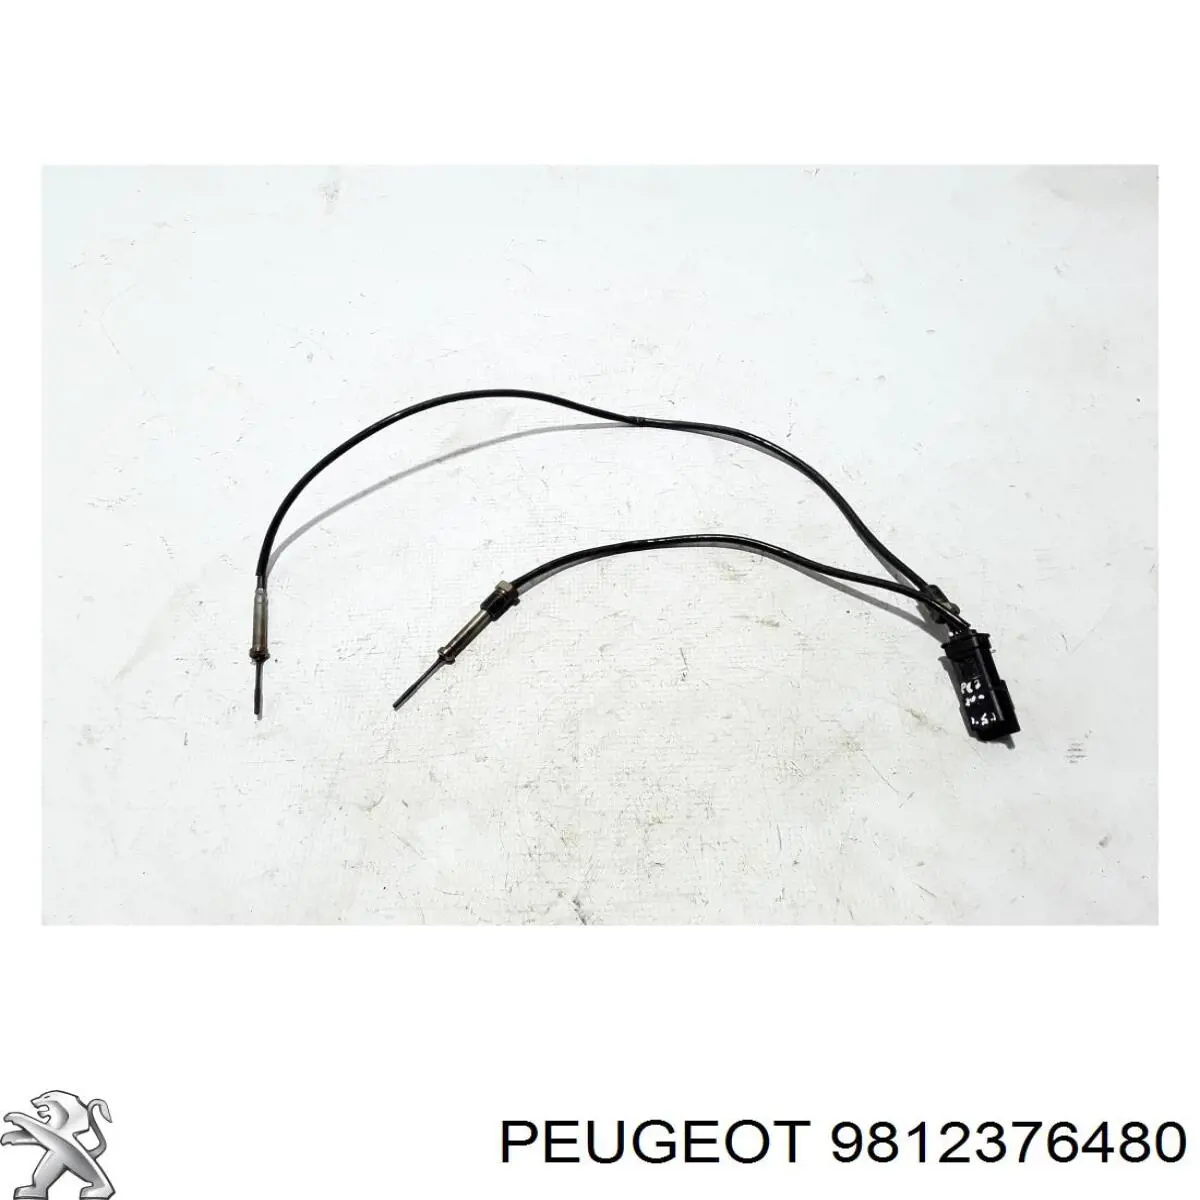 Sensor de temperatura, gas de escape, Filtro hollín/partículas para Peugeot 508 (FC, FJ, F4)